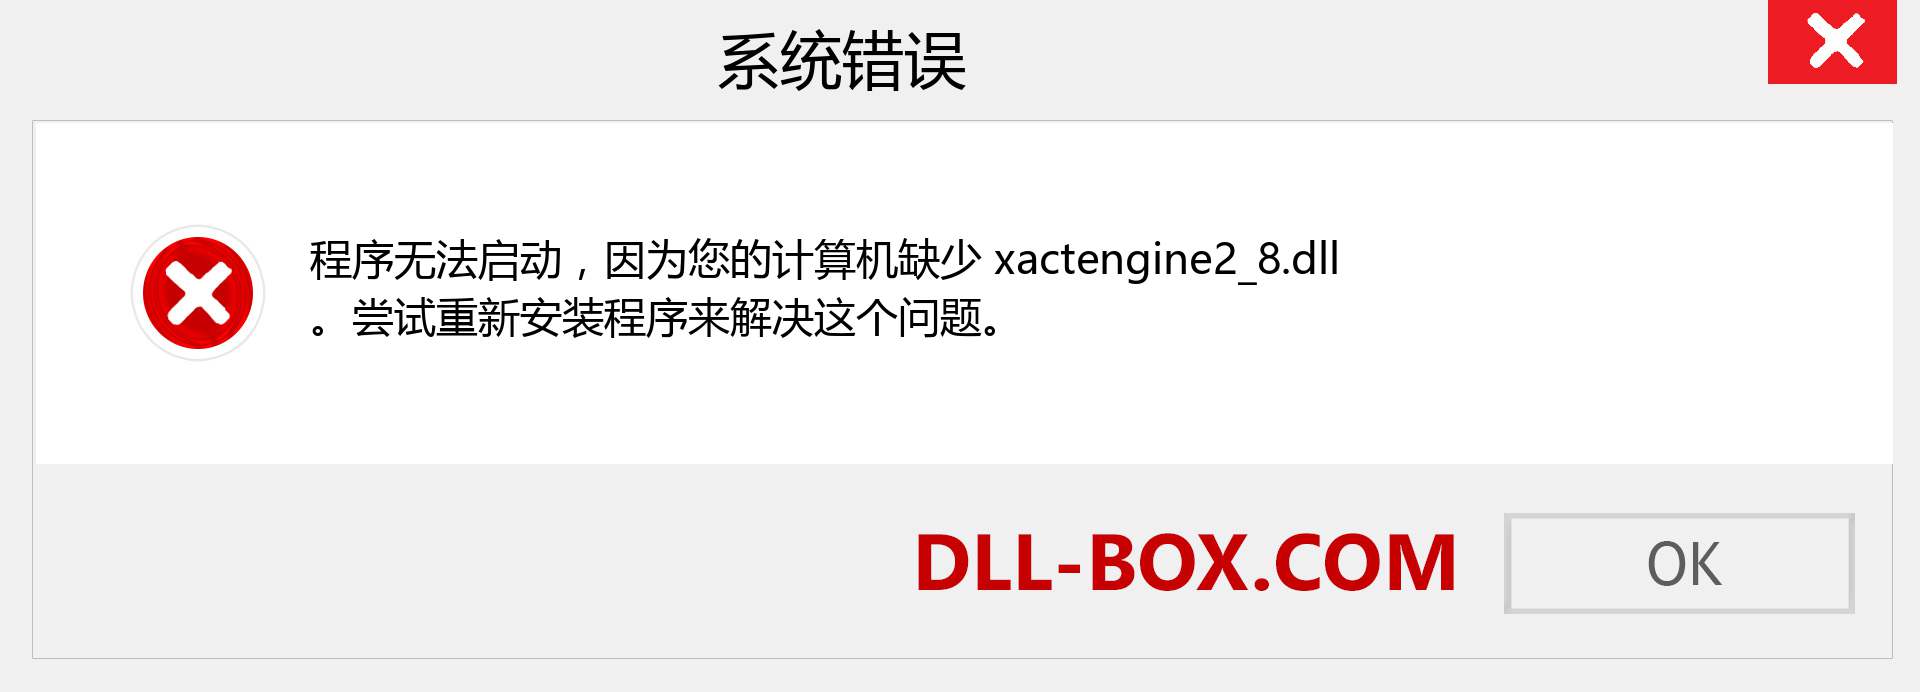 xactengine2_8.dll 文件丢失？。 适用于 Windows 7、8、10 的下载 - 修复 Windows、照片、图像上的 xactengine2_8 dll 丢失错误